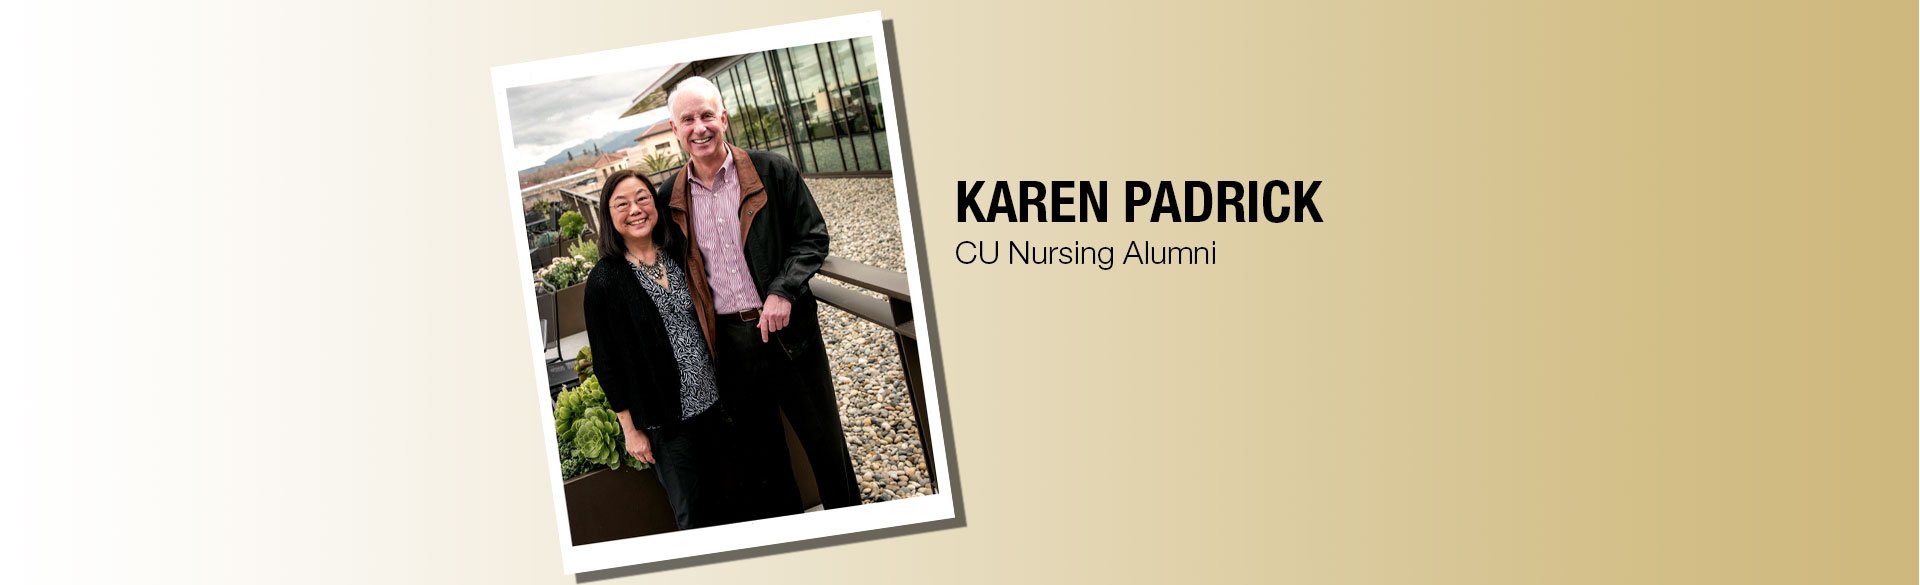 CU Nursing Alumni Karen Padrick and husband Kevin